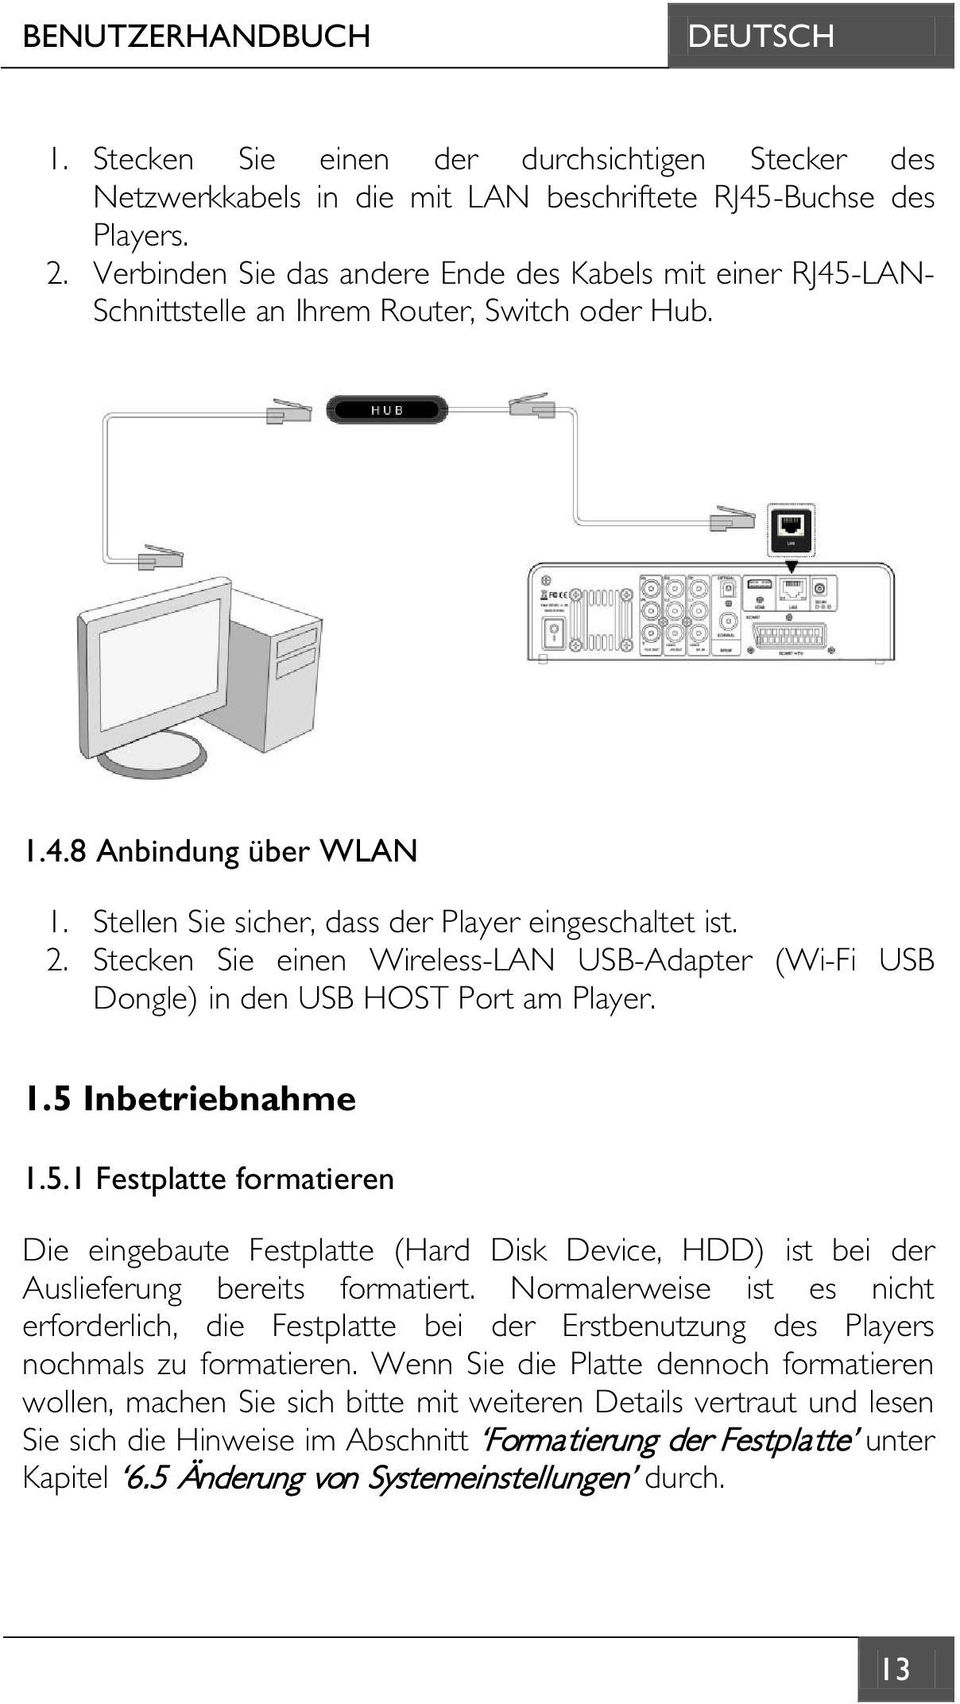 Stecken Sie einen Wireless-LAN USB-Adapter (Wi-Fi USB Dongle) in den USB HOST Port am Player. 1.5 